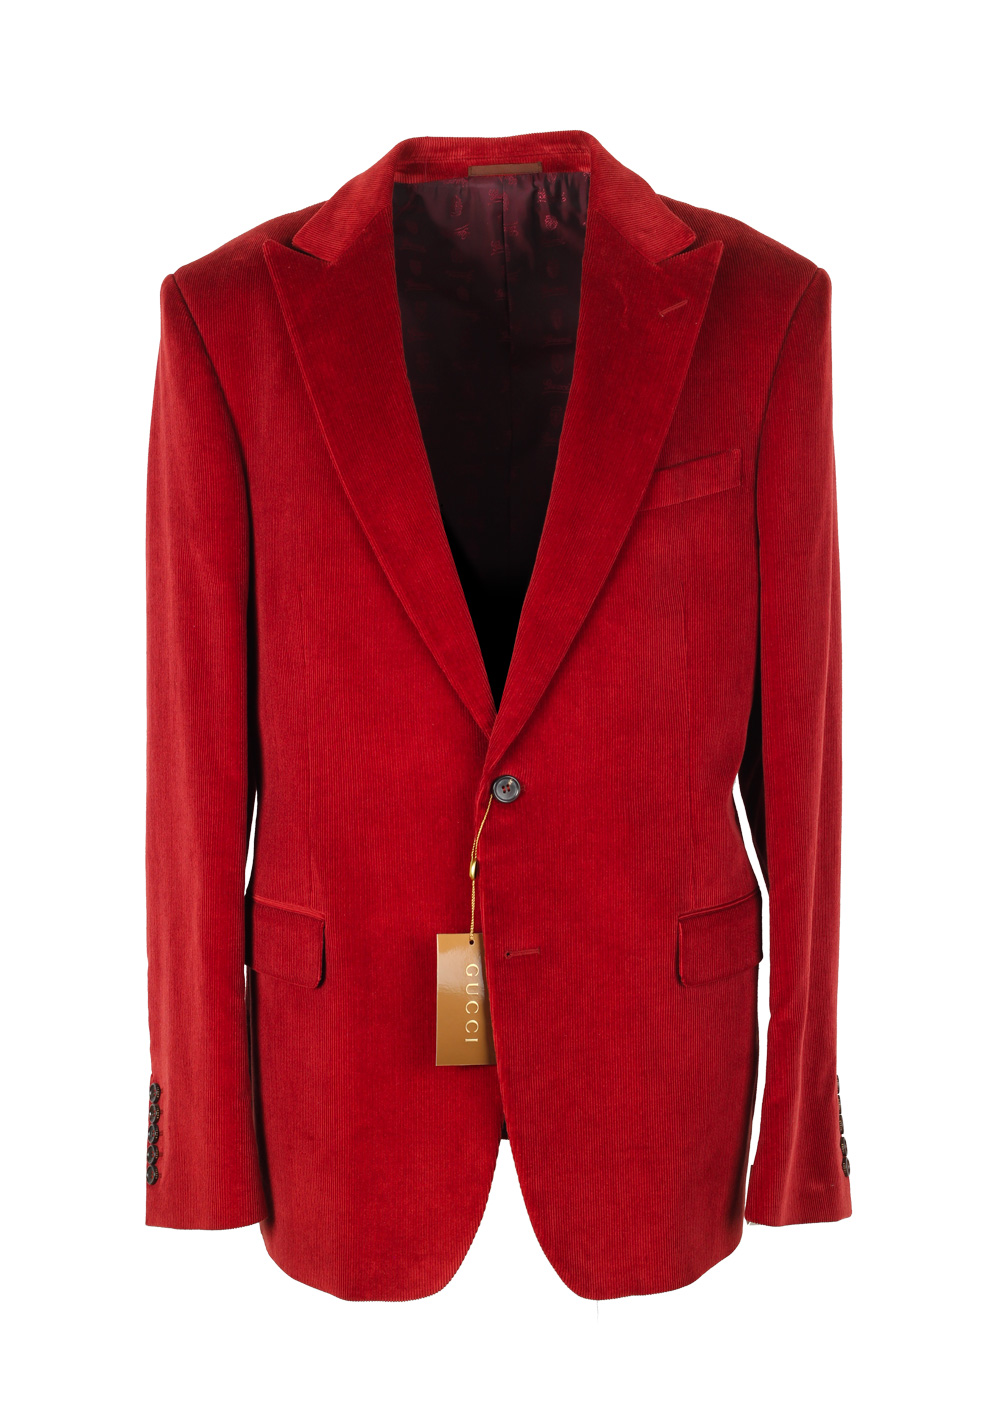 Gucci Red Corduroy Sport Coat Size 56L / 46L U.S. In Cotton | Costume ...